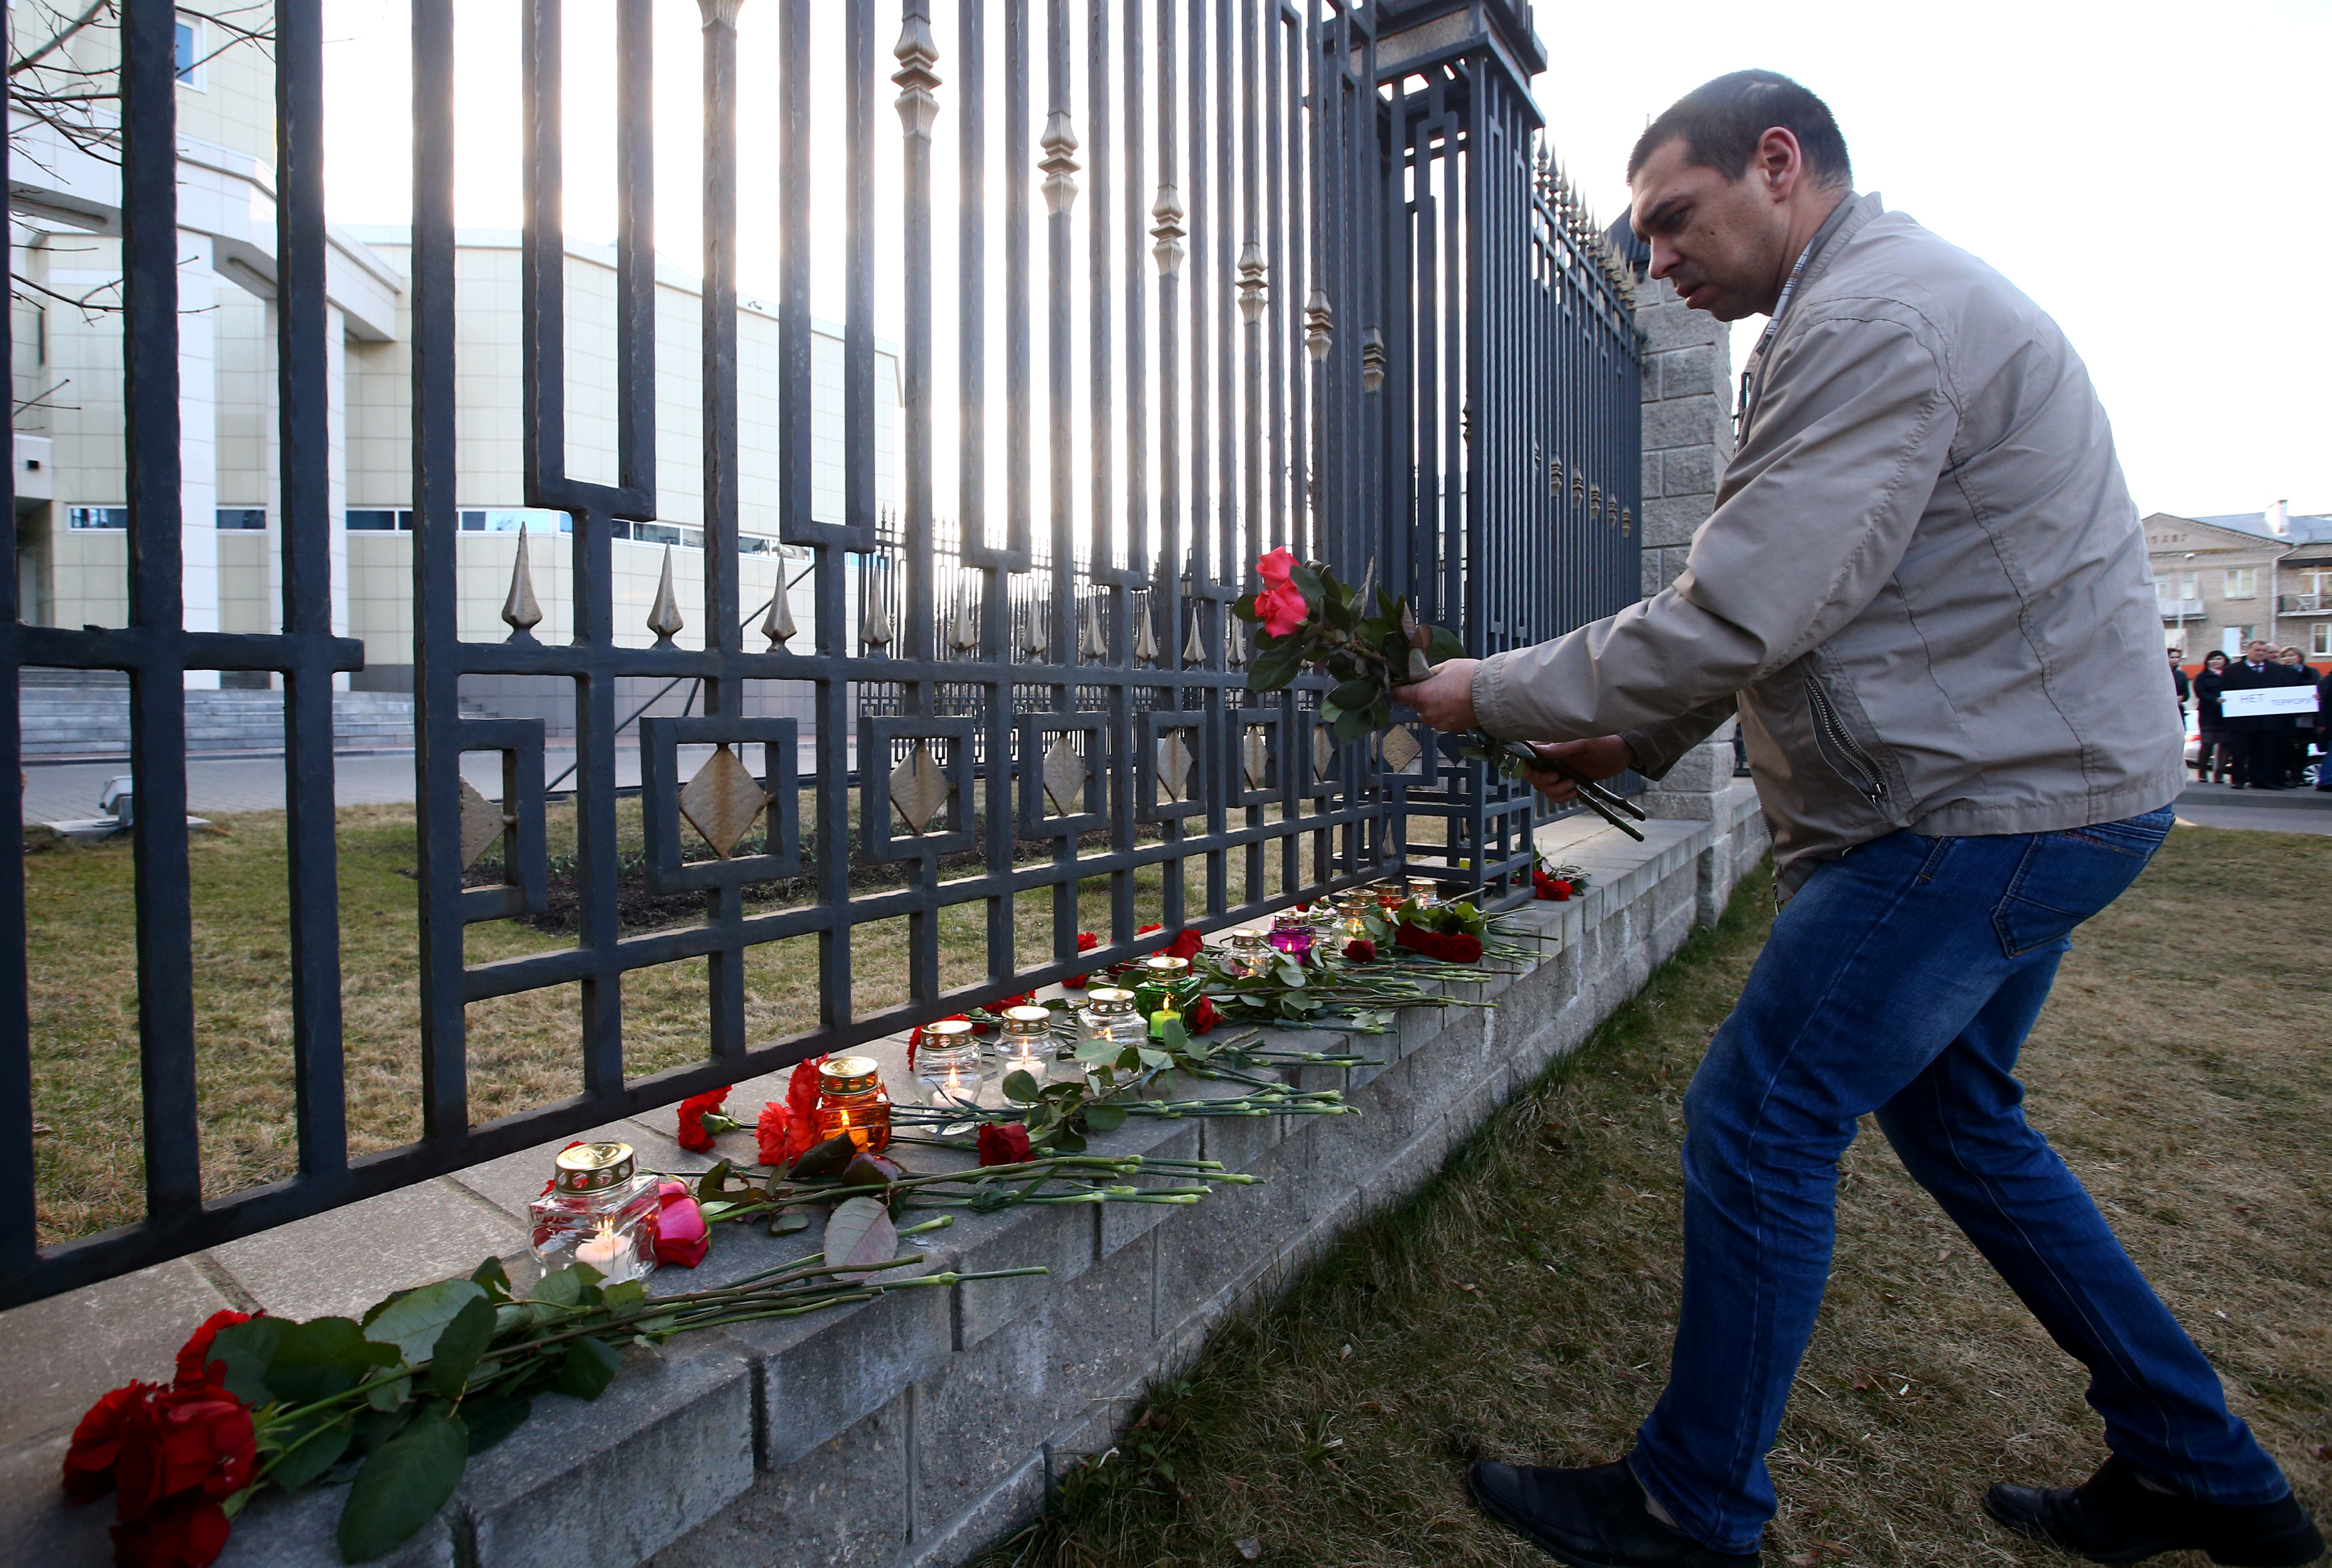 وضع الزهور لتوديع حادث انفجار مترو بطرسبرج